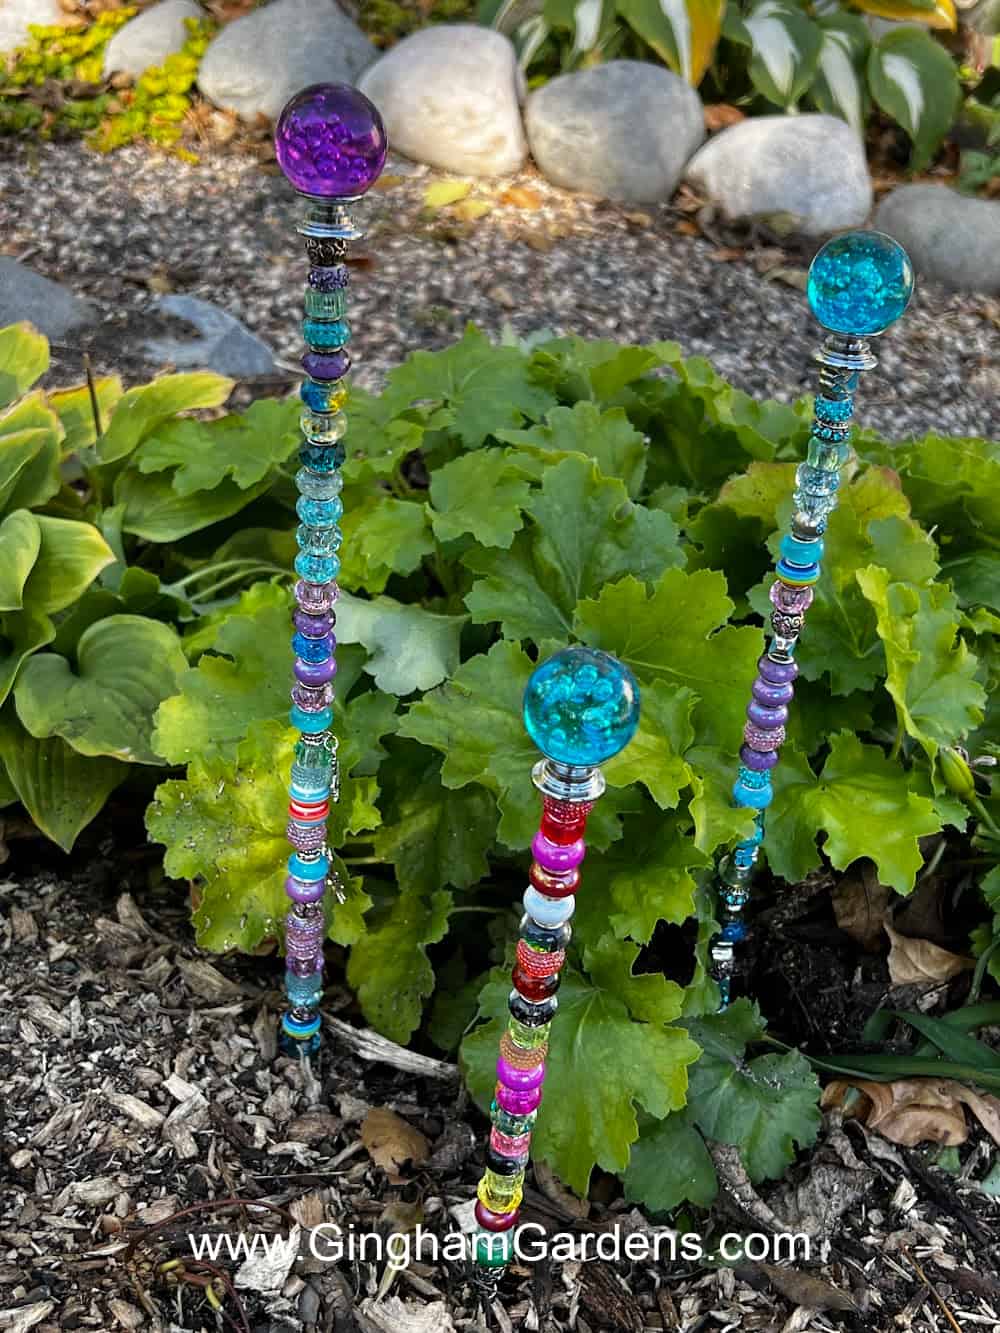 Glass bead garden stakes in a shade garden.